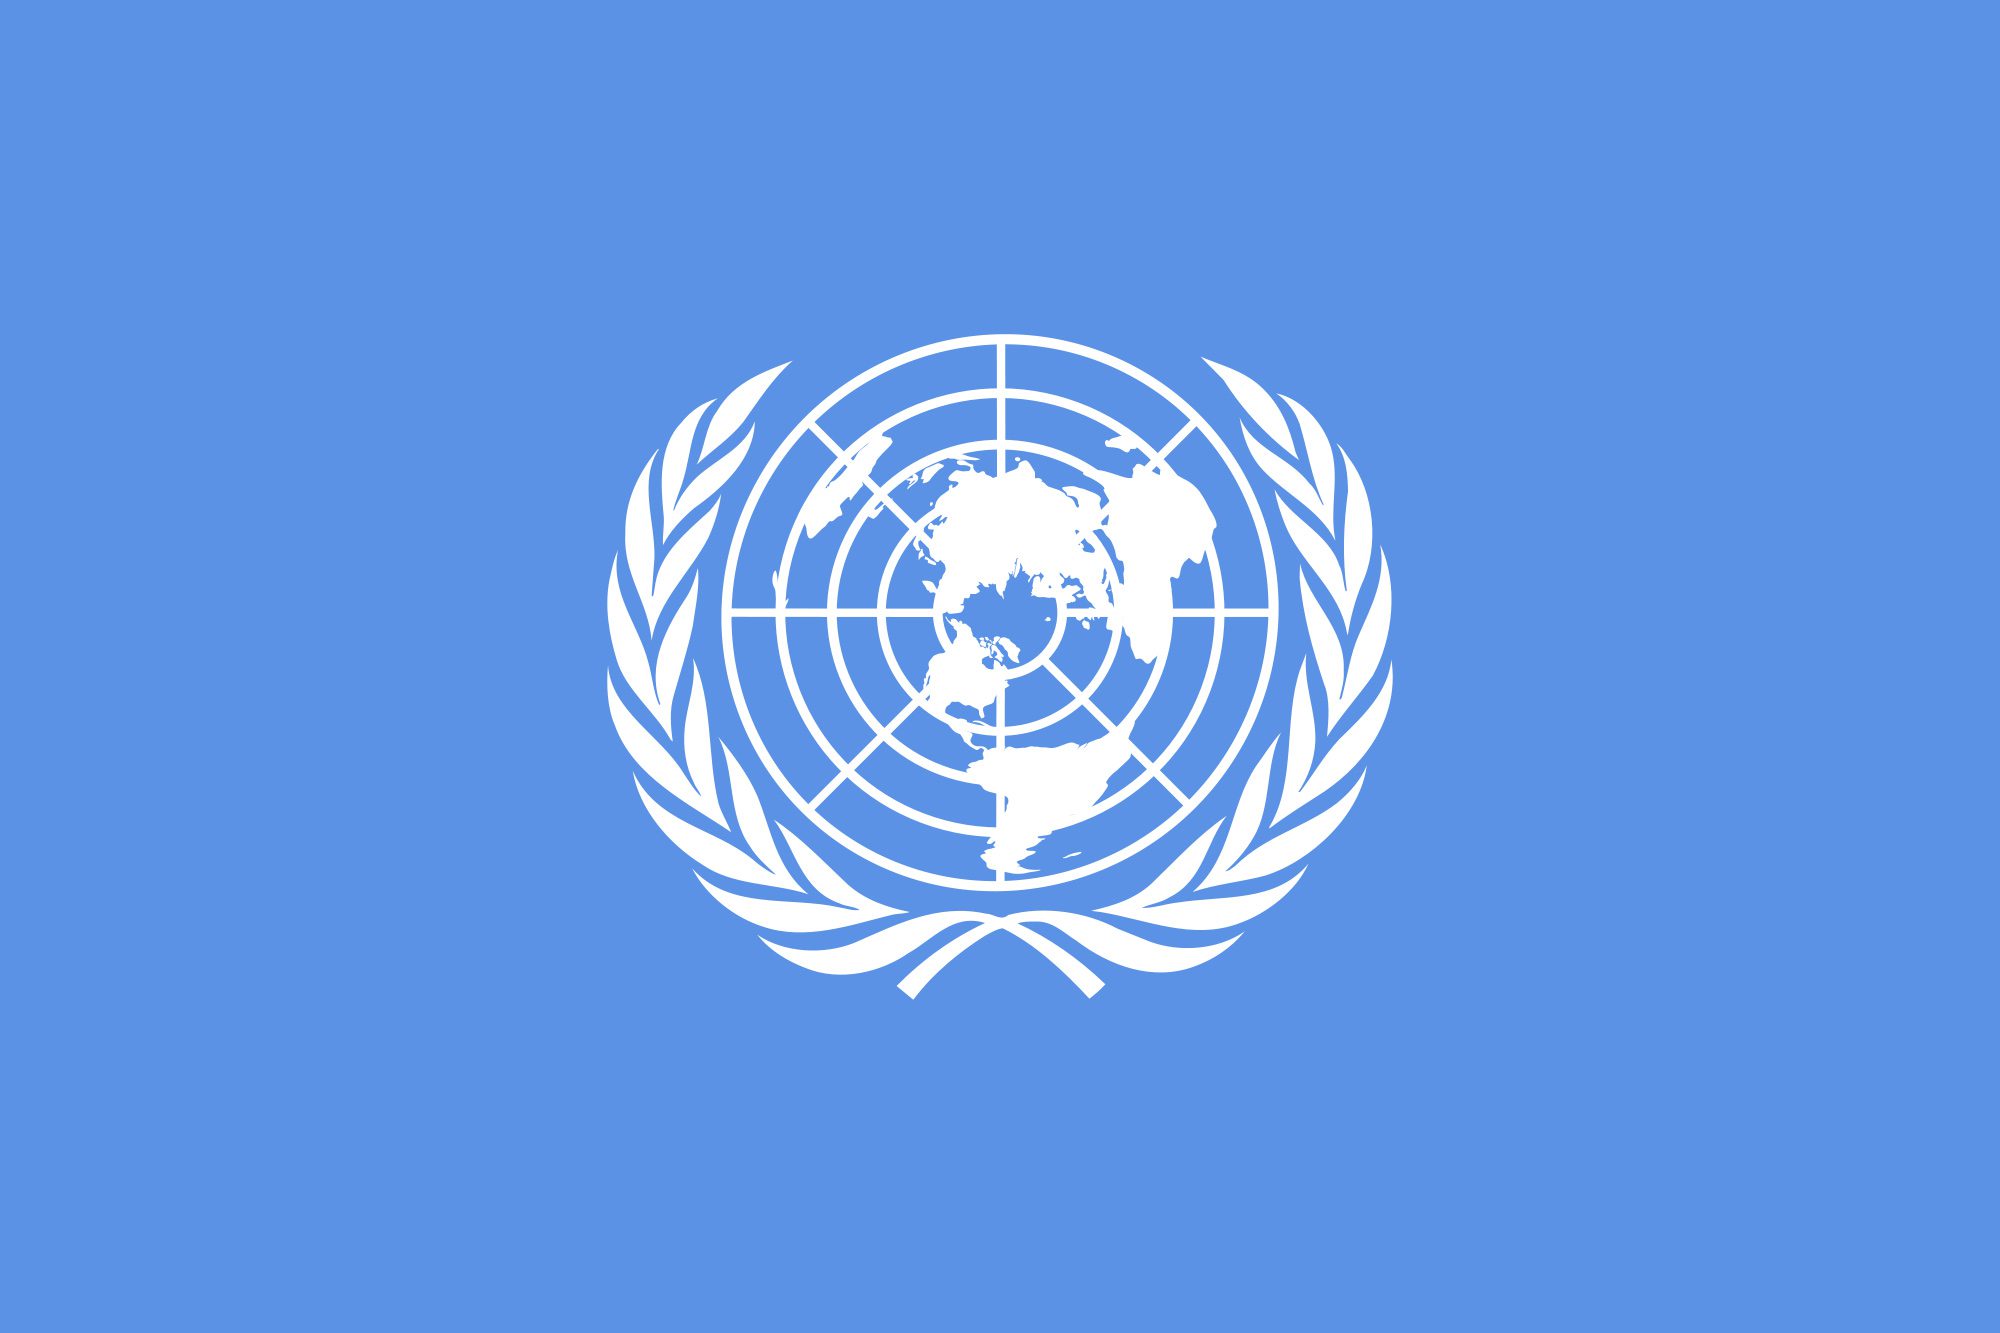 5 United Nations emblem